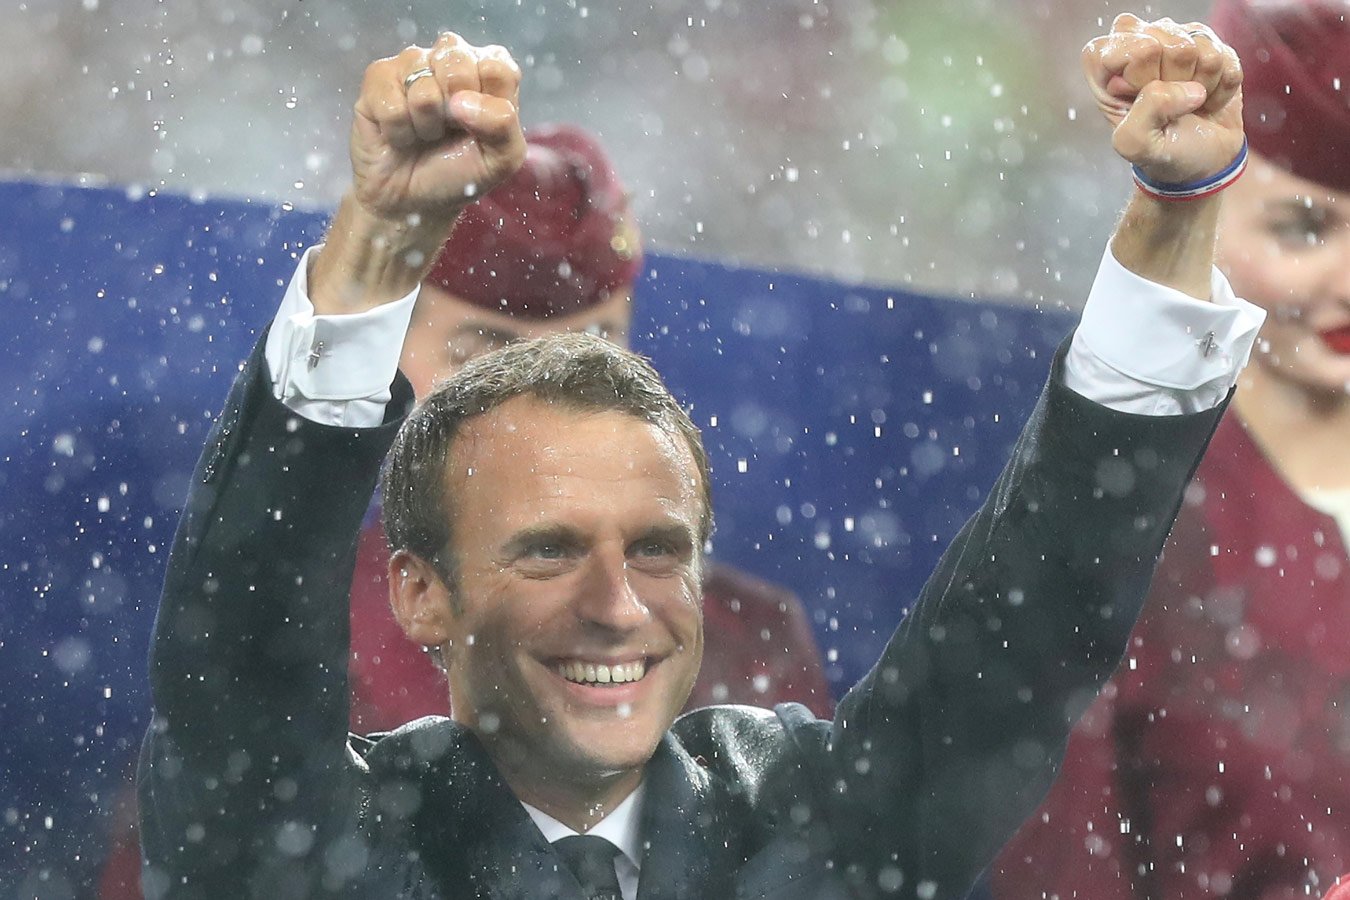 Президент Франции Макрон забил пенальти в благотворительном матче